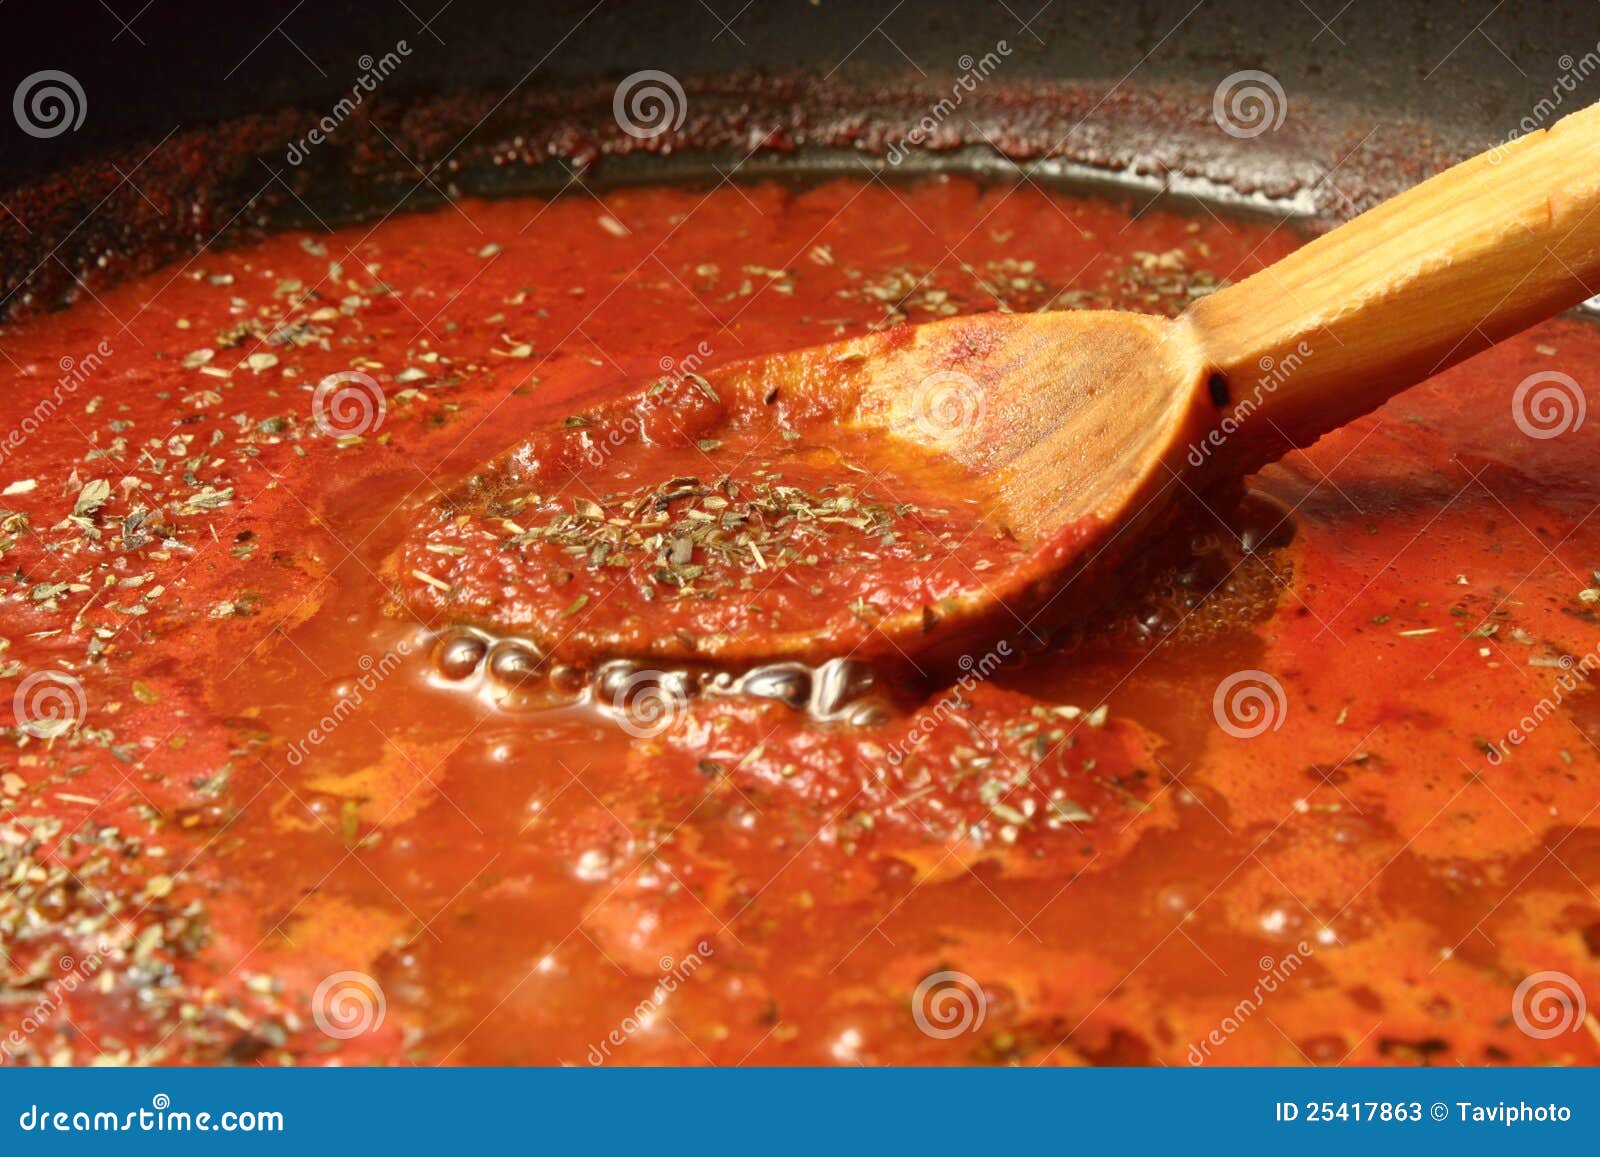 томатный соус для пиццы простой рецепт фото 106